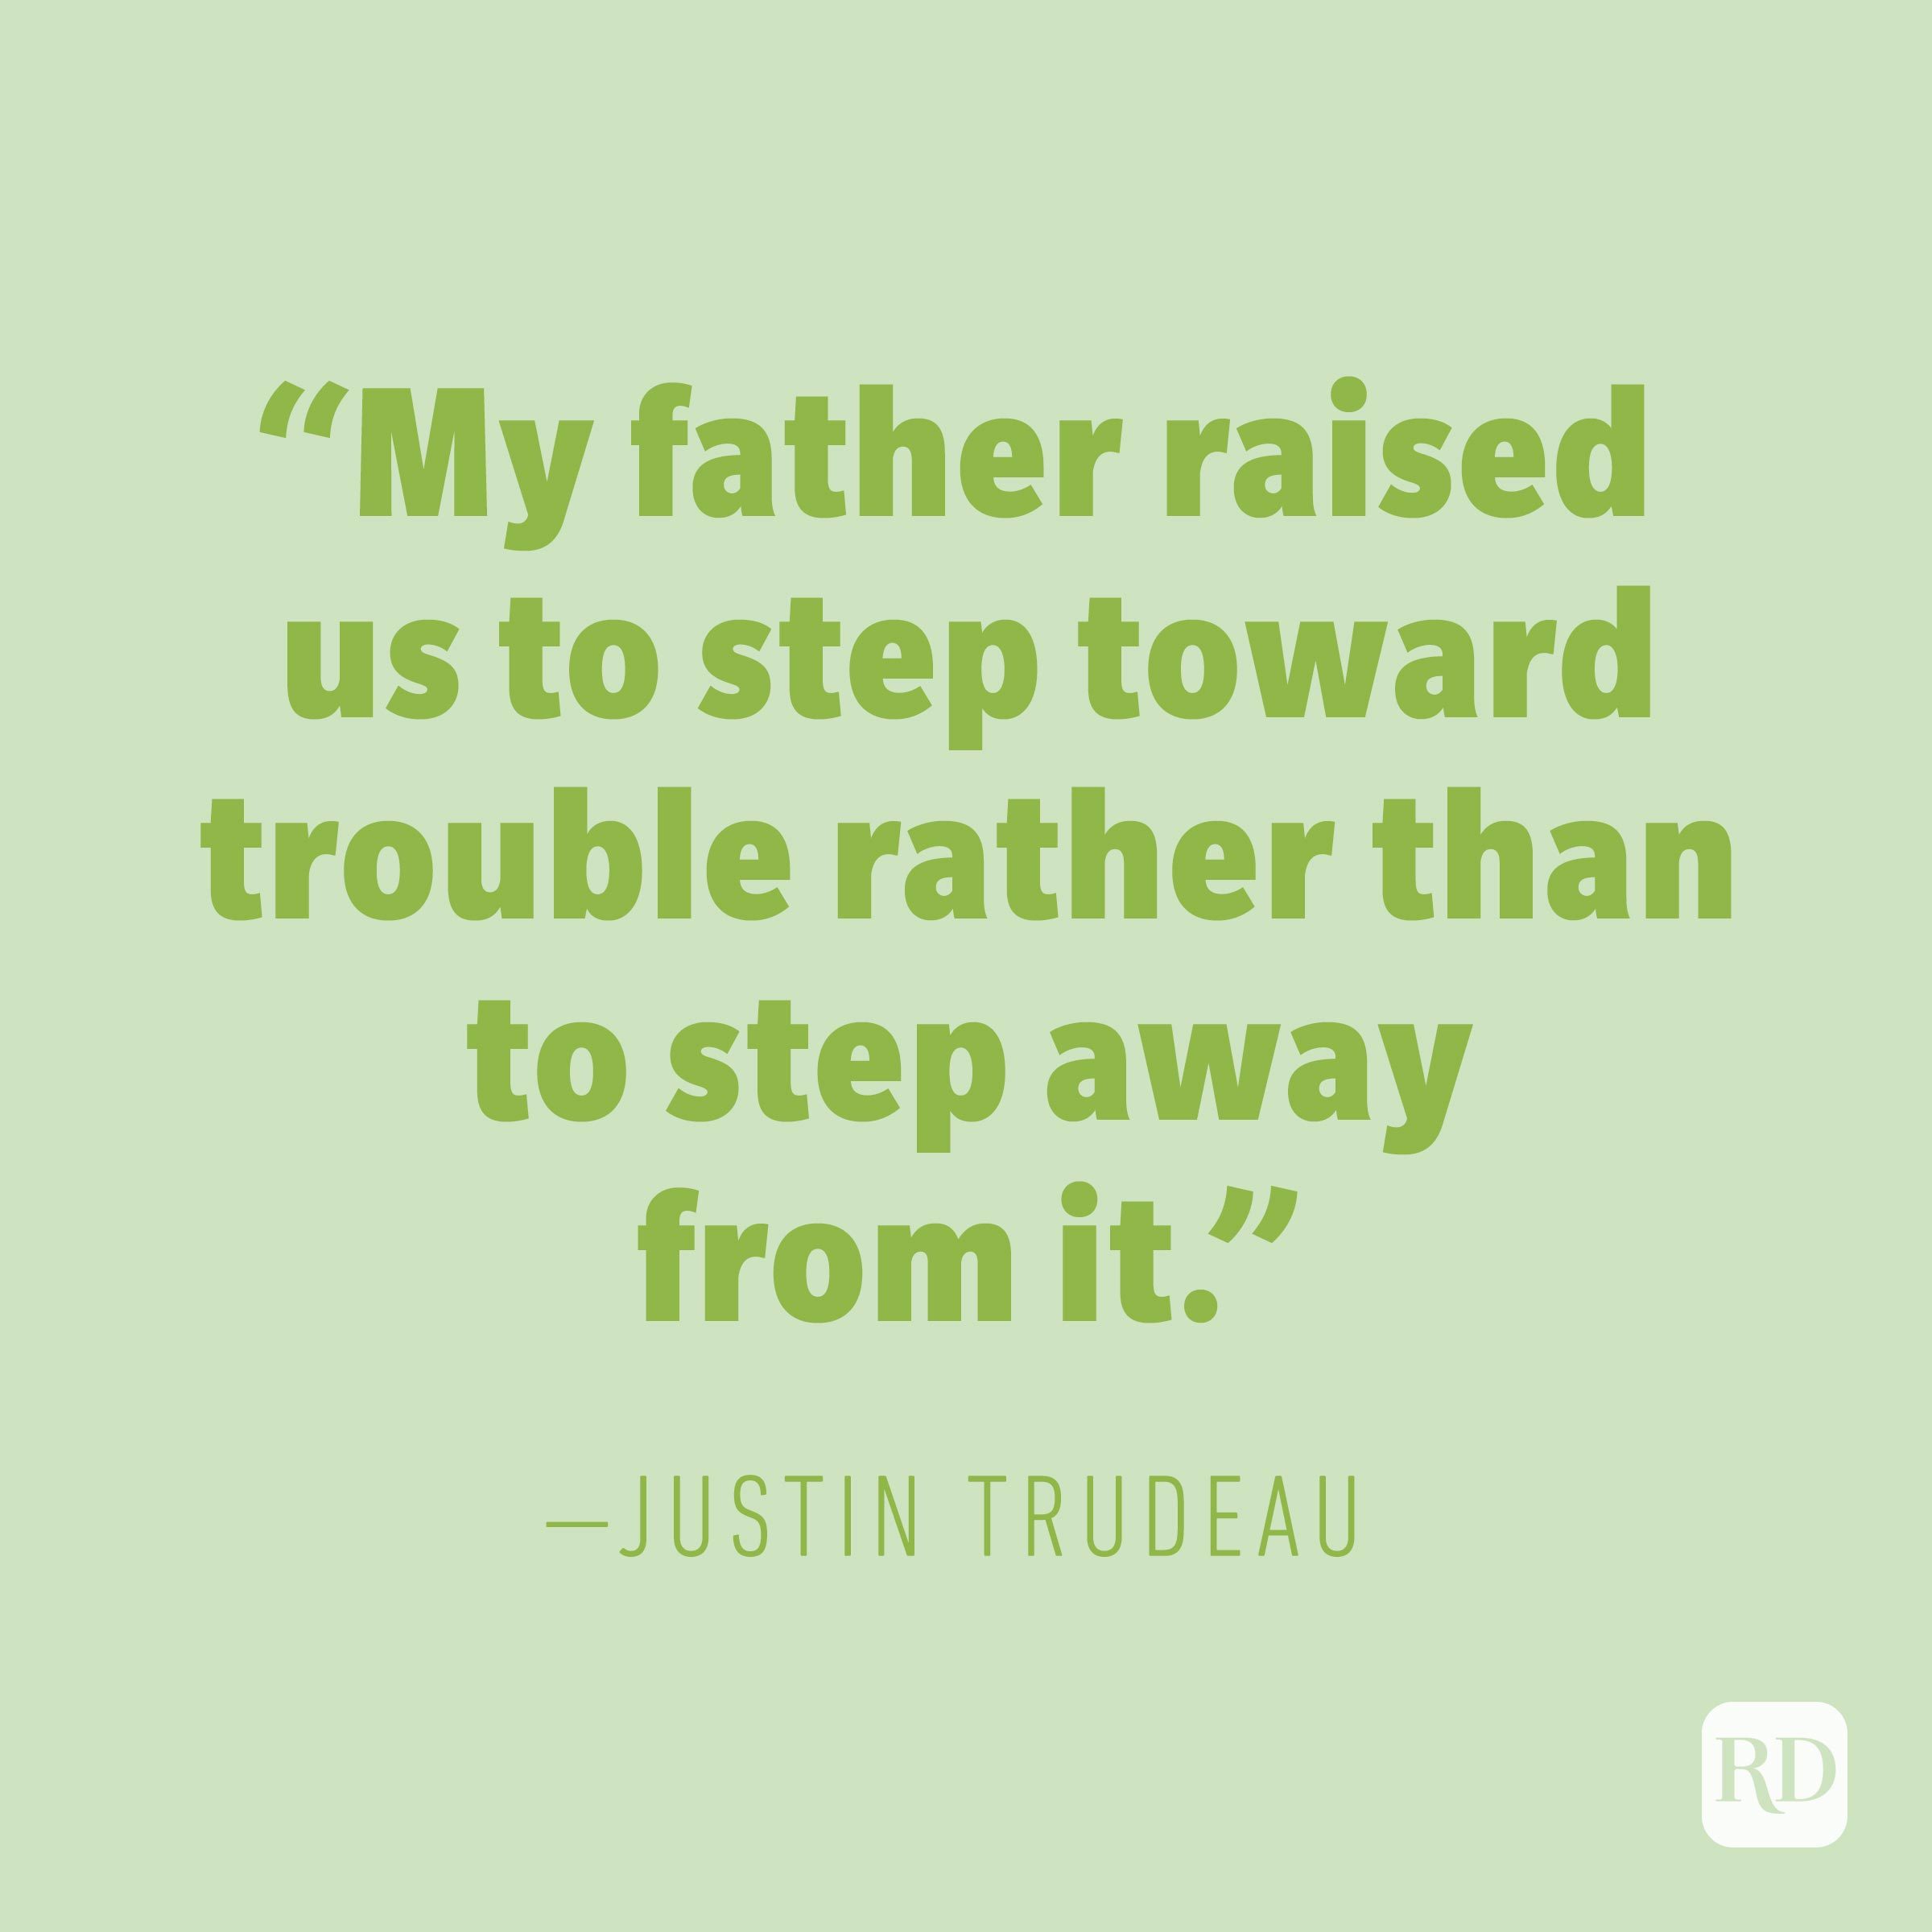 Justin Trudeau quote